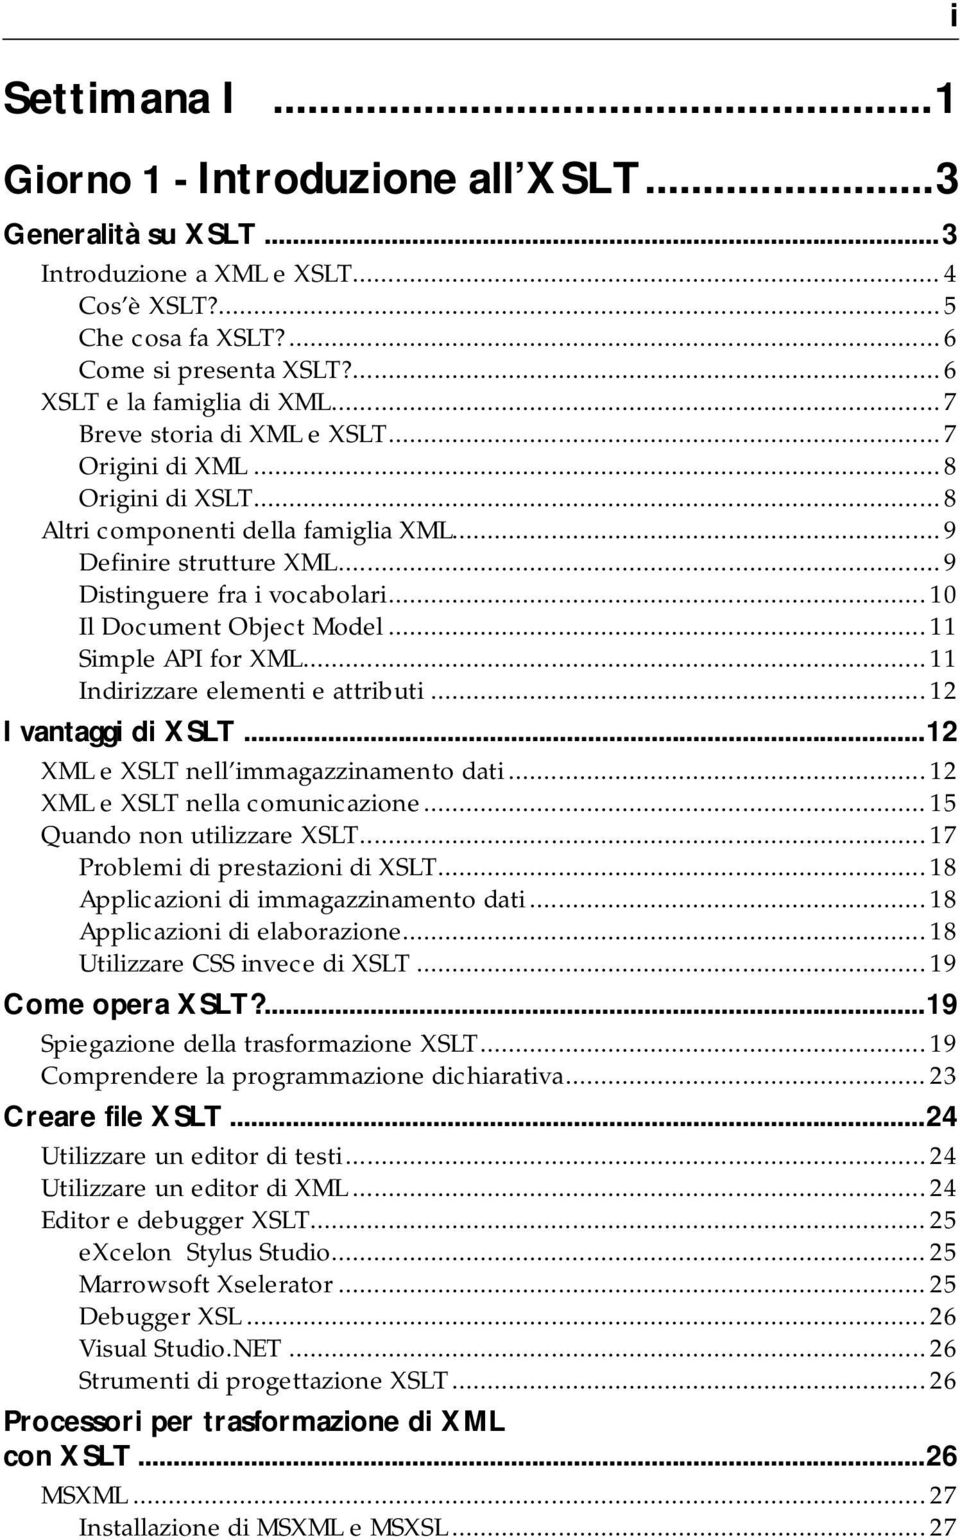 .. 10 Il Document Object Model... 11 Simple API for XML... 11 Indirizzare elementi e attributi... 12 I vantaggi di XSLT...12 XML e XSLT nell immagazzinamento dati... 12 XML e XSLT nella comunicazione.